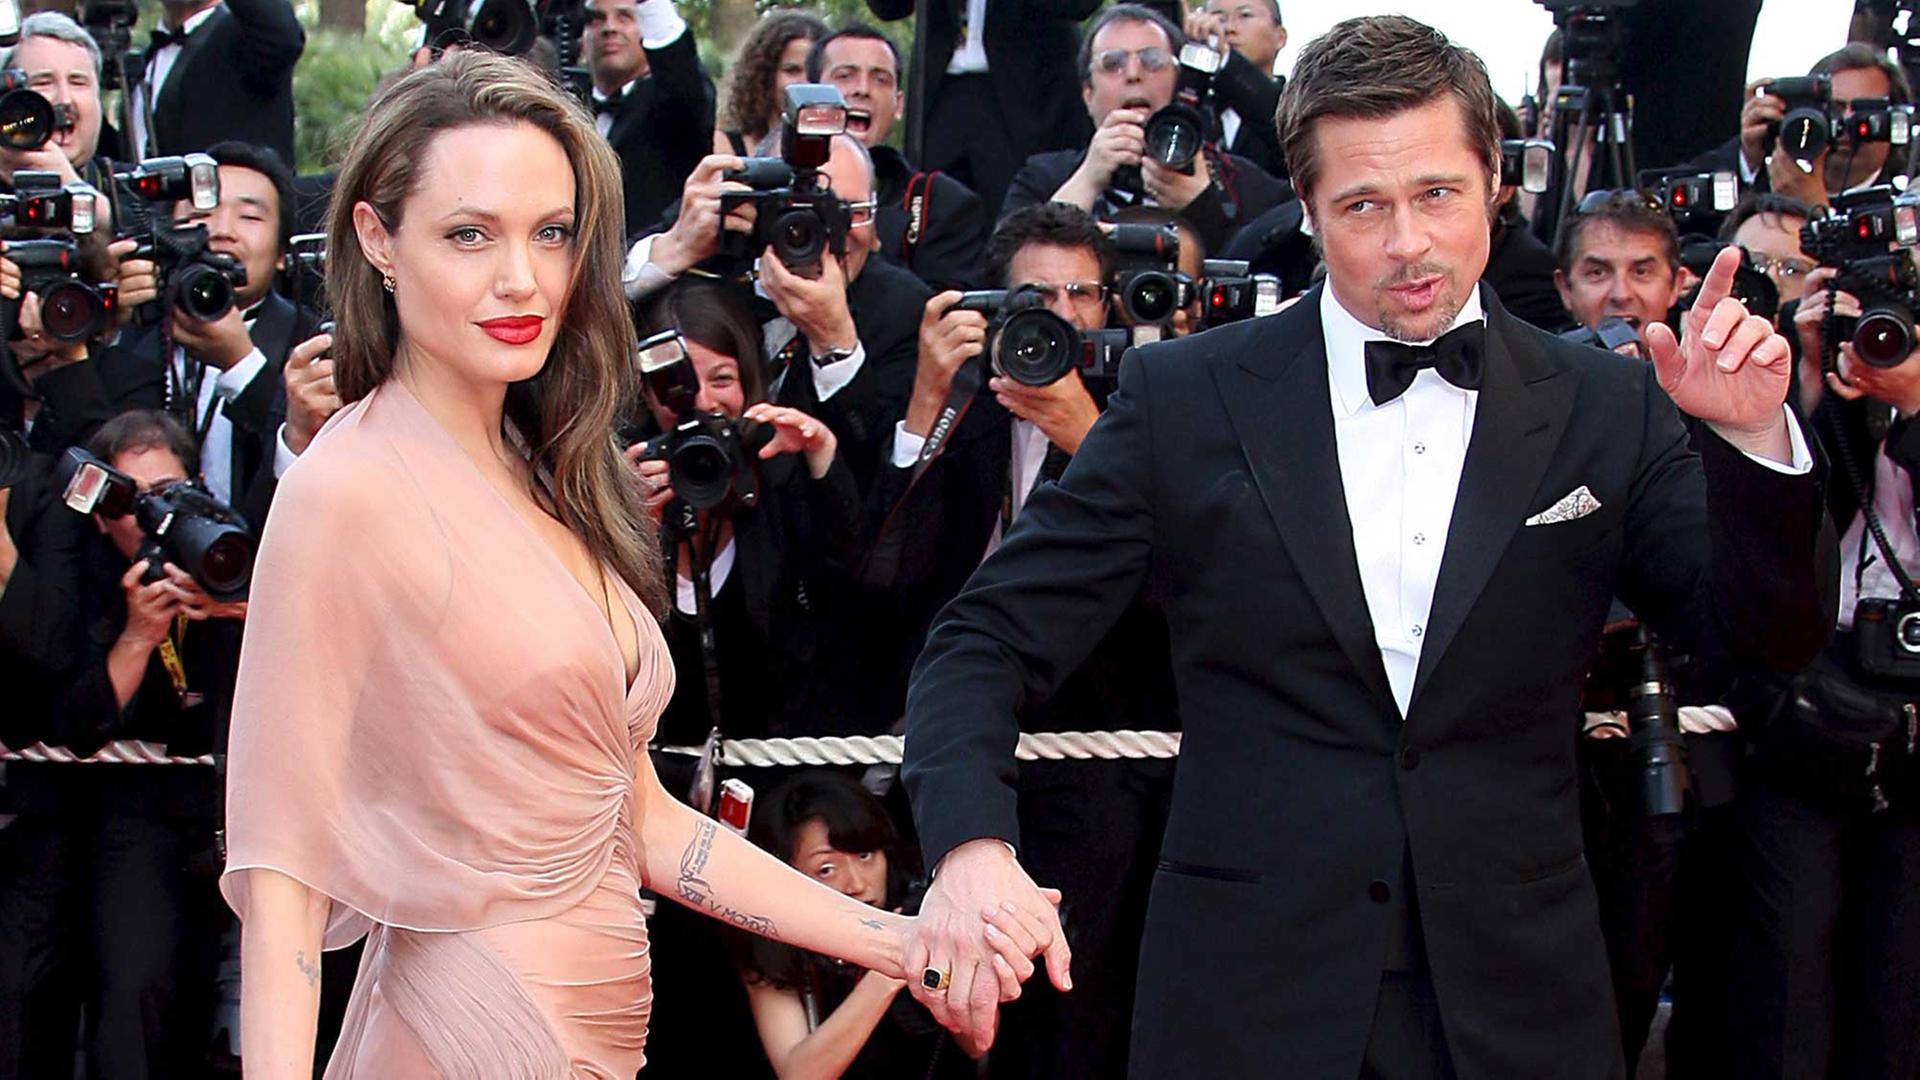 Das US-amerikanische Schauspielerpaar Angelina Jolie und Brad Pitt bei den 62. Filmfestspielen in Cannes 2009 bei der Gala des Films "Inglourious Basterds".